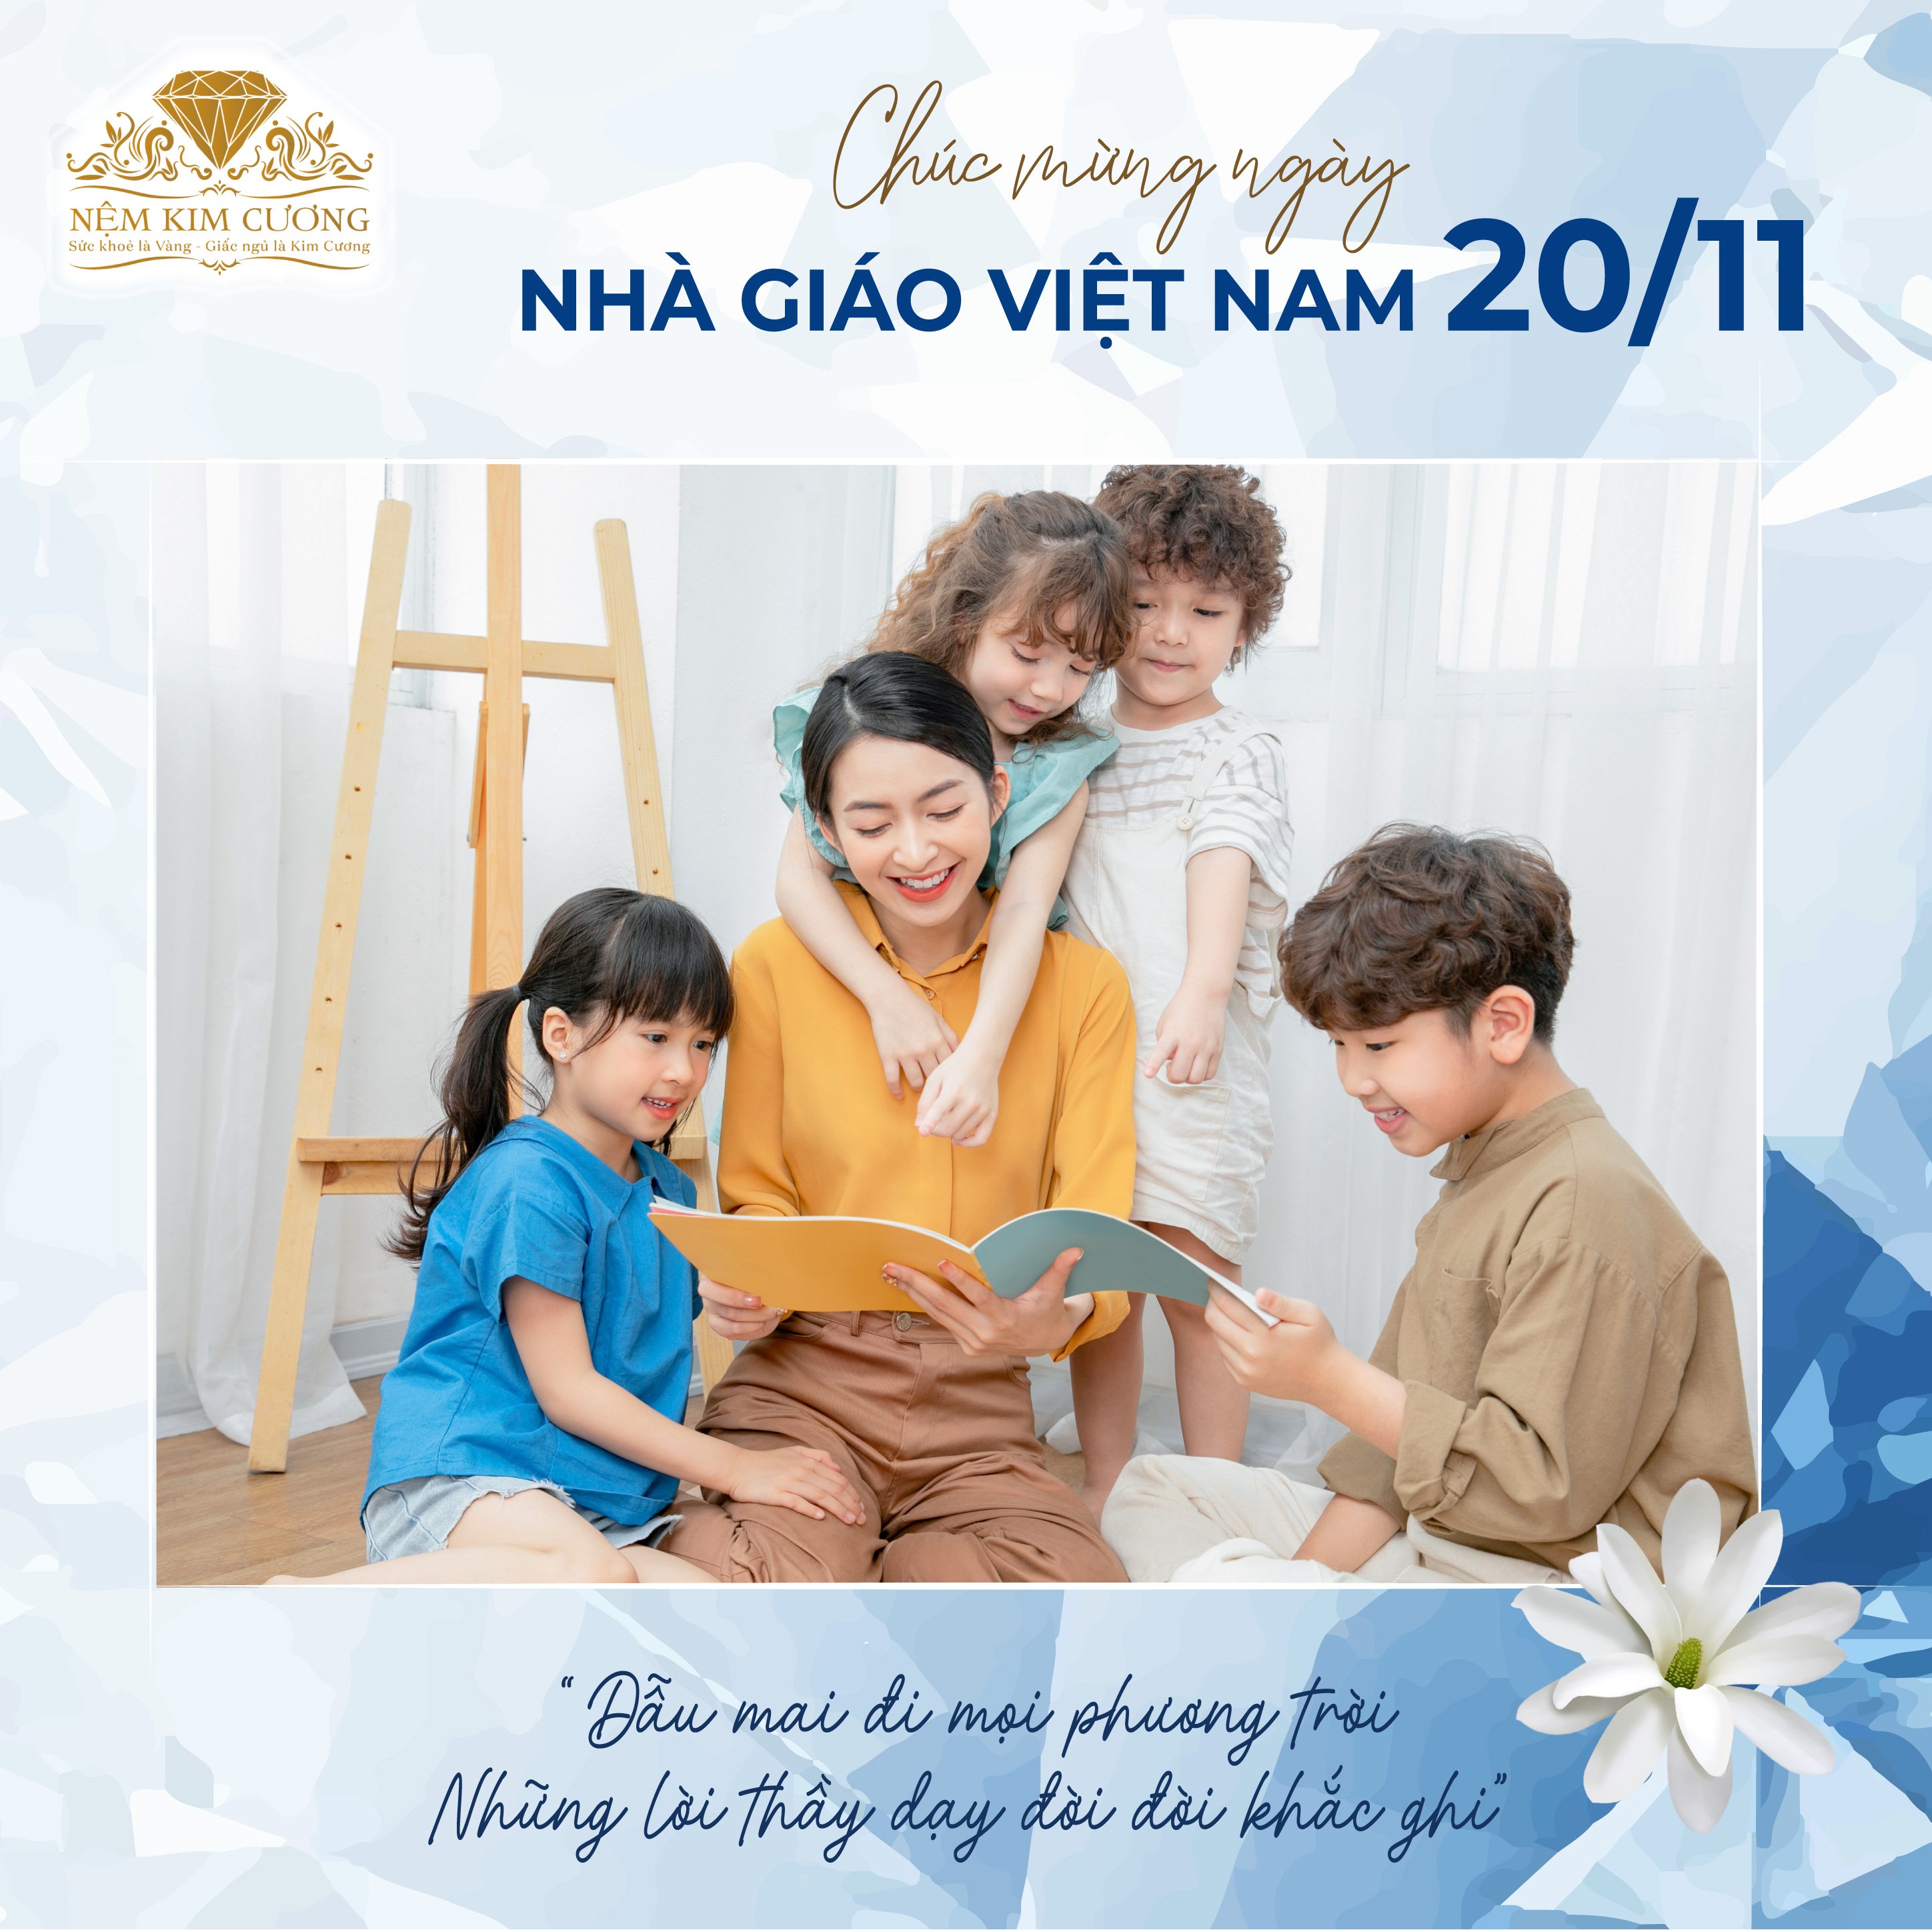 Ngày nhà giáo Việt Nam là ngày đặc biệt và ý nghĩa để tôn vinh công lao của các thầy cô giáo. Hãy tìm hiểu thêm về lịch sử và ý nghĩa của ngày này trên hình ảnh đầy ý nghĩa này.